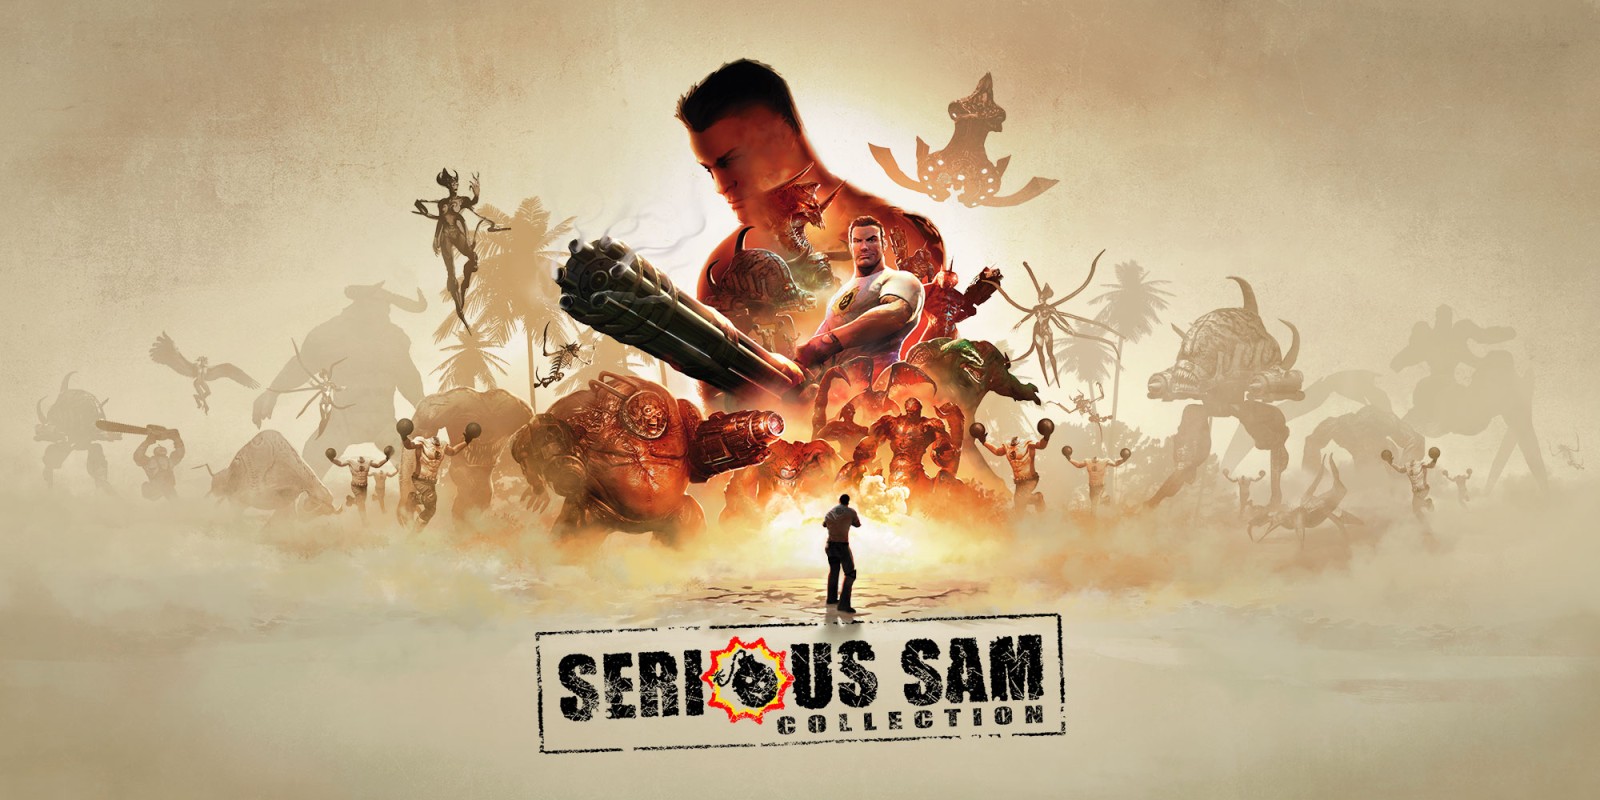 سوییچ - serious sam - کالکشن - ریمستر تکینیو techinio